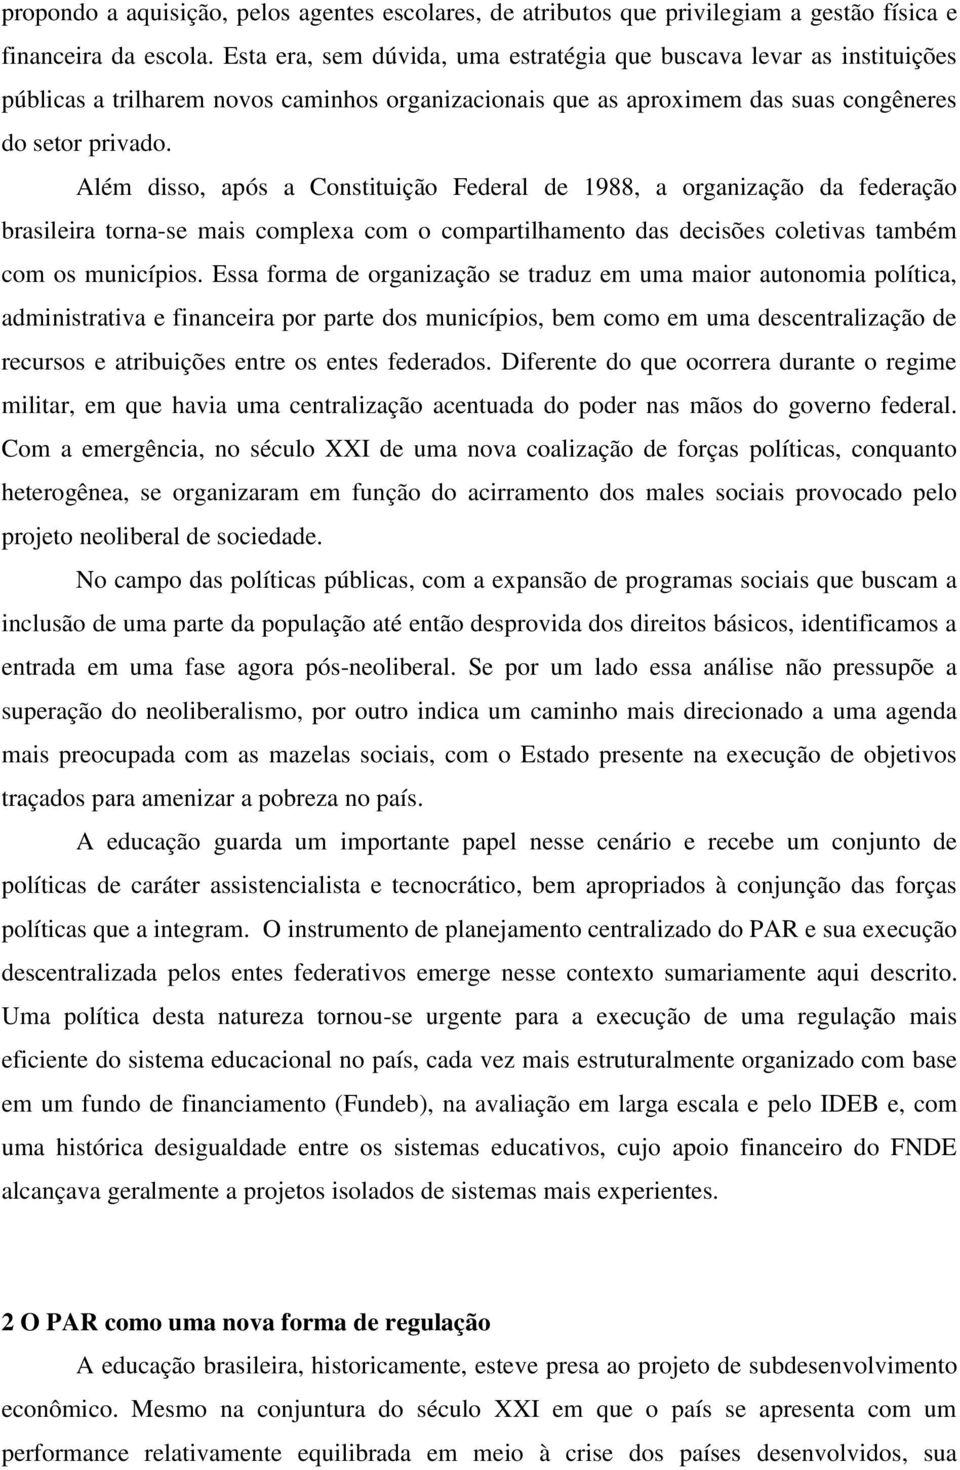 Além disso, após a Constituição Federal de 1988, a organização da federação brasileira torna-se mais complexa com o compartilhamento das decisões coletivas também com os municípios.